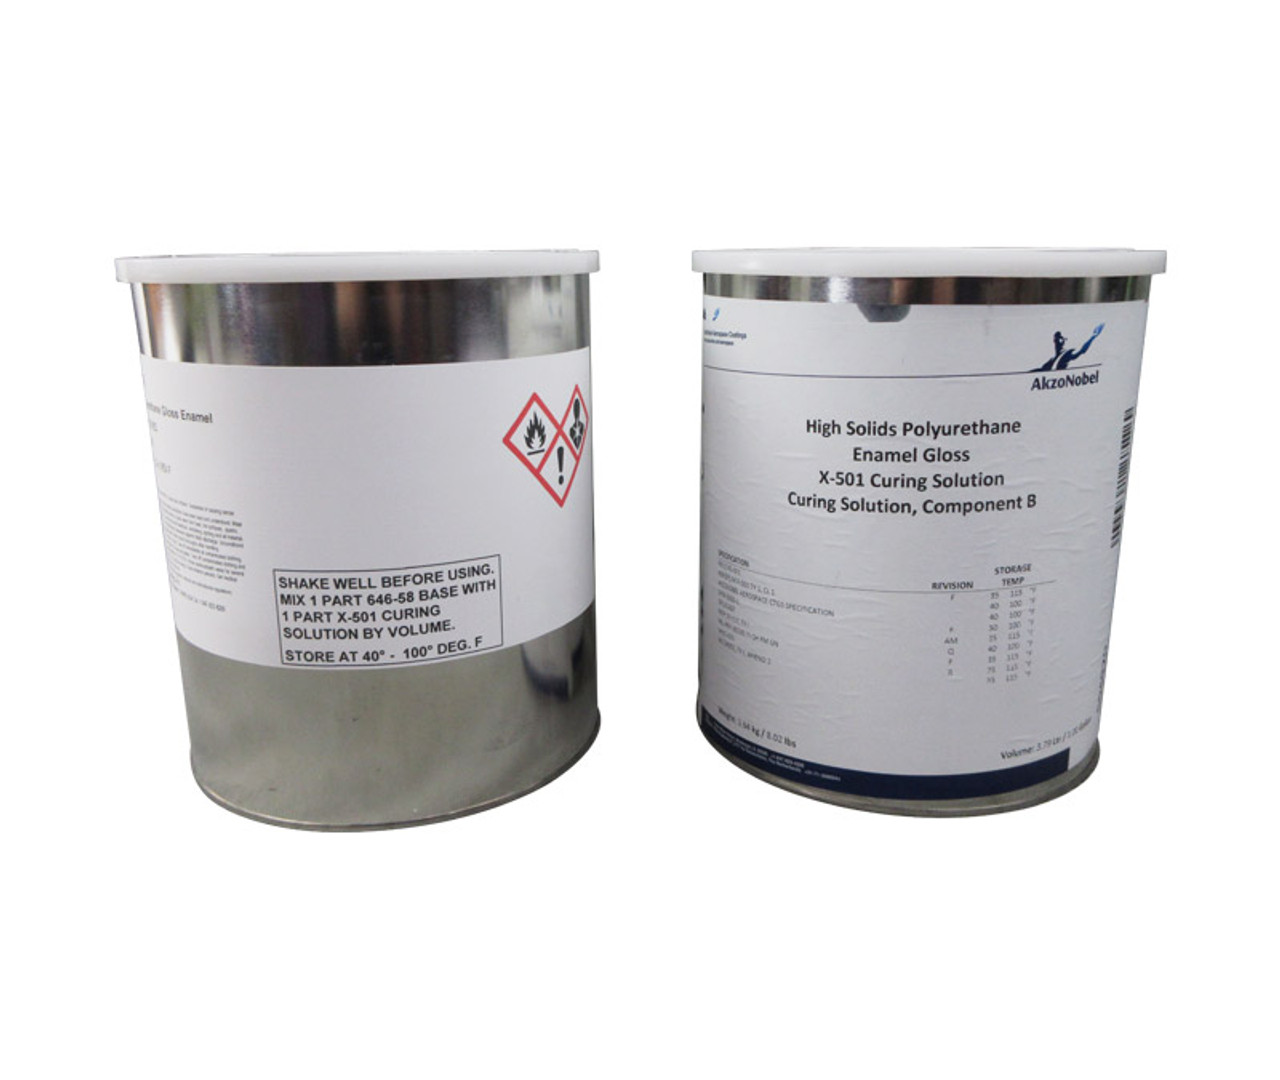 Résine polyester isophtalique - K733-A series - AOC - résistante aux  produits chimiques / ignifugée